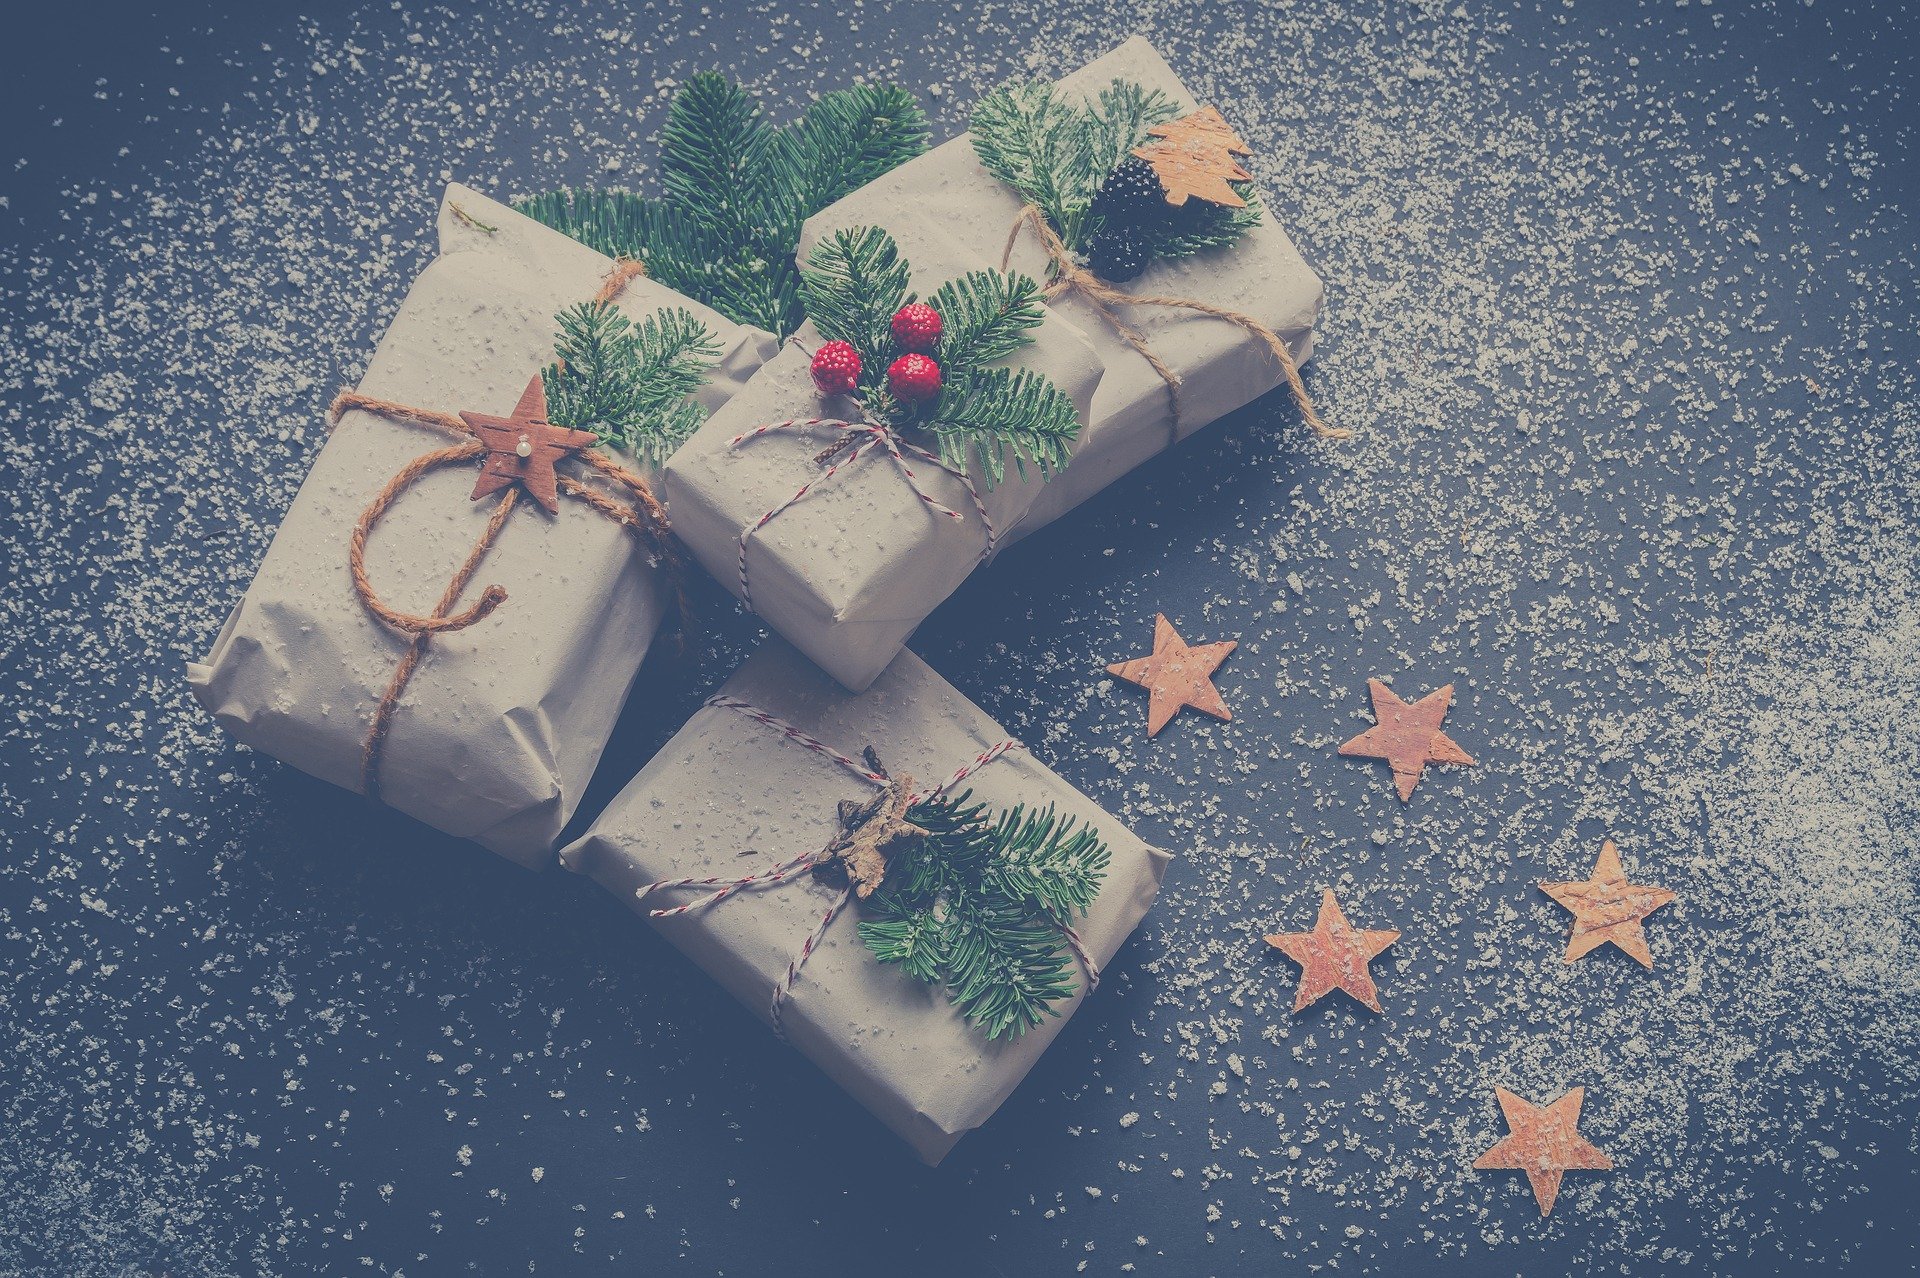 A Natale spedisci i tuoi regali con corriere espresso!